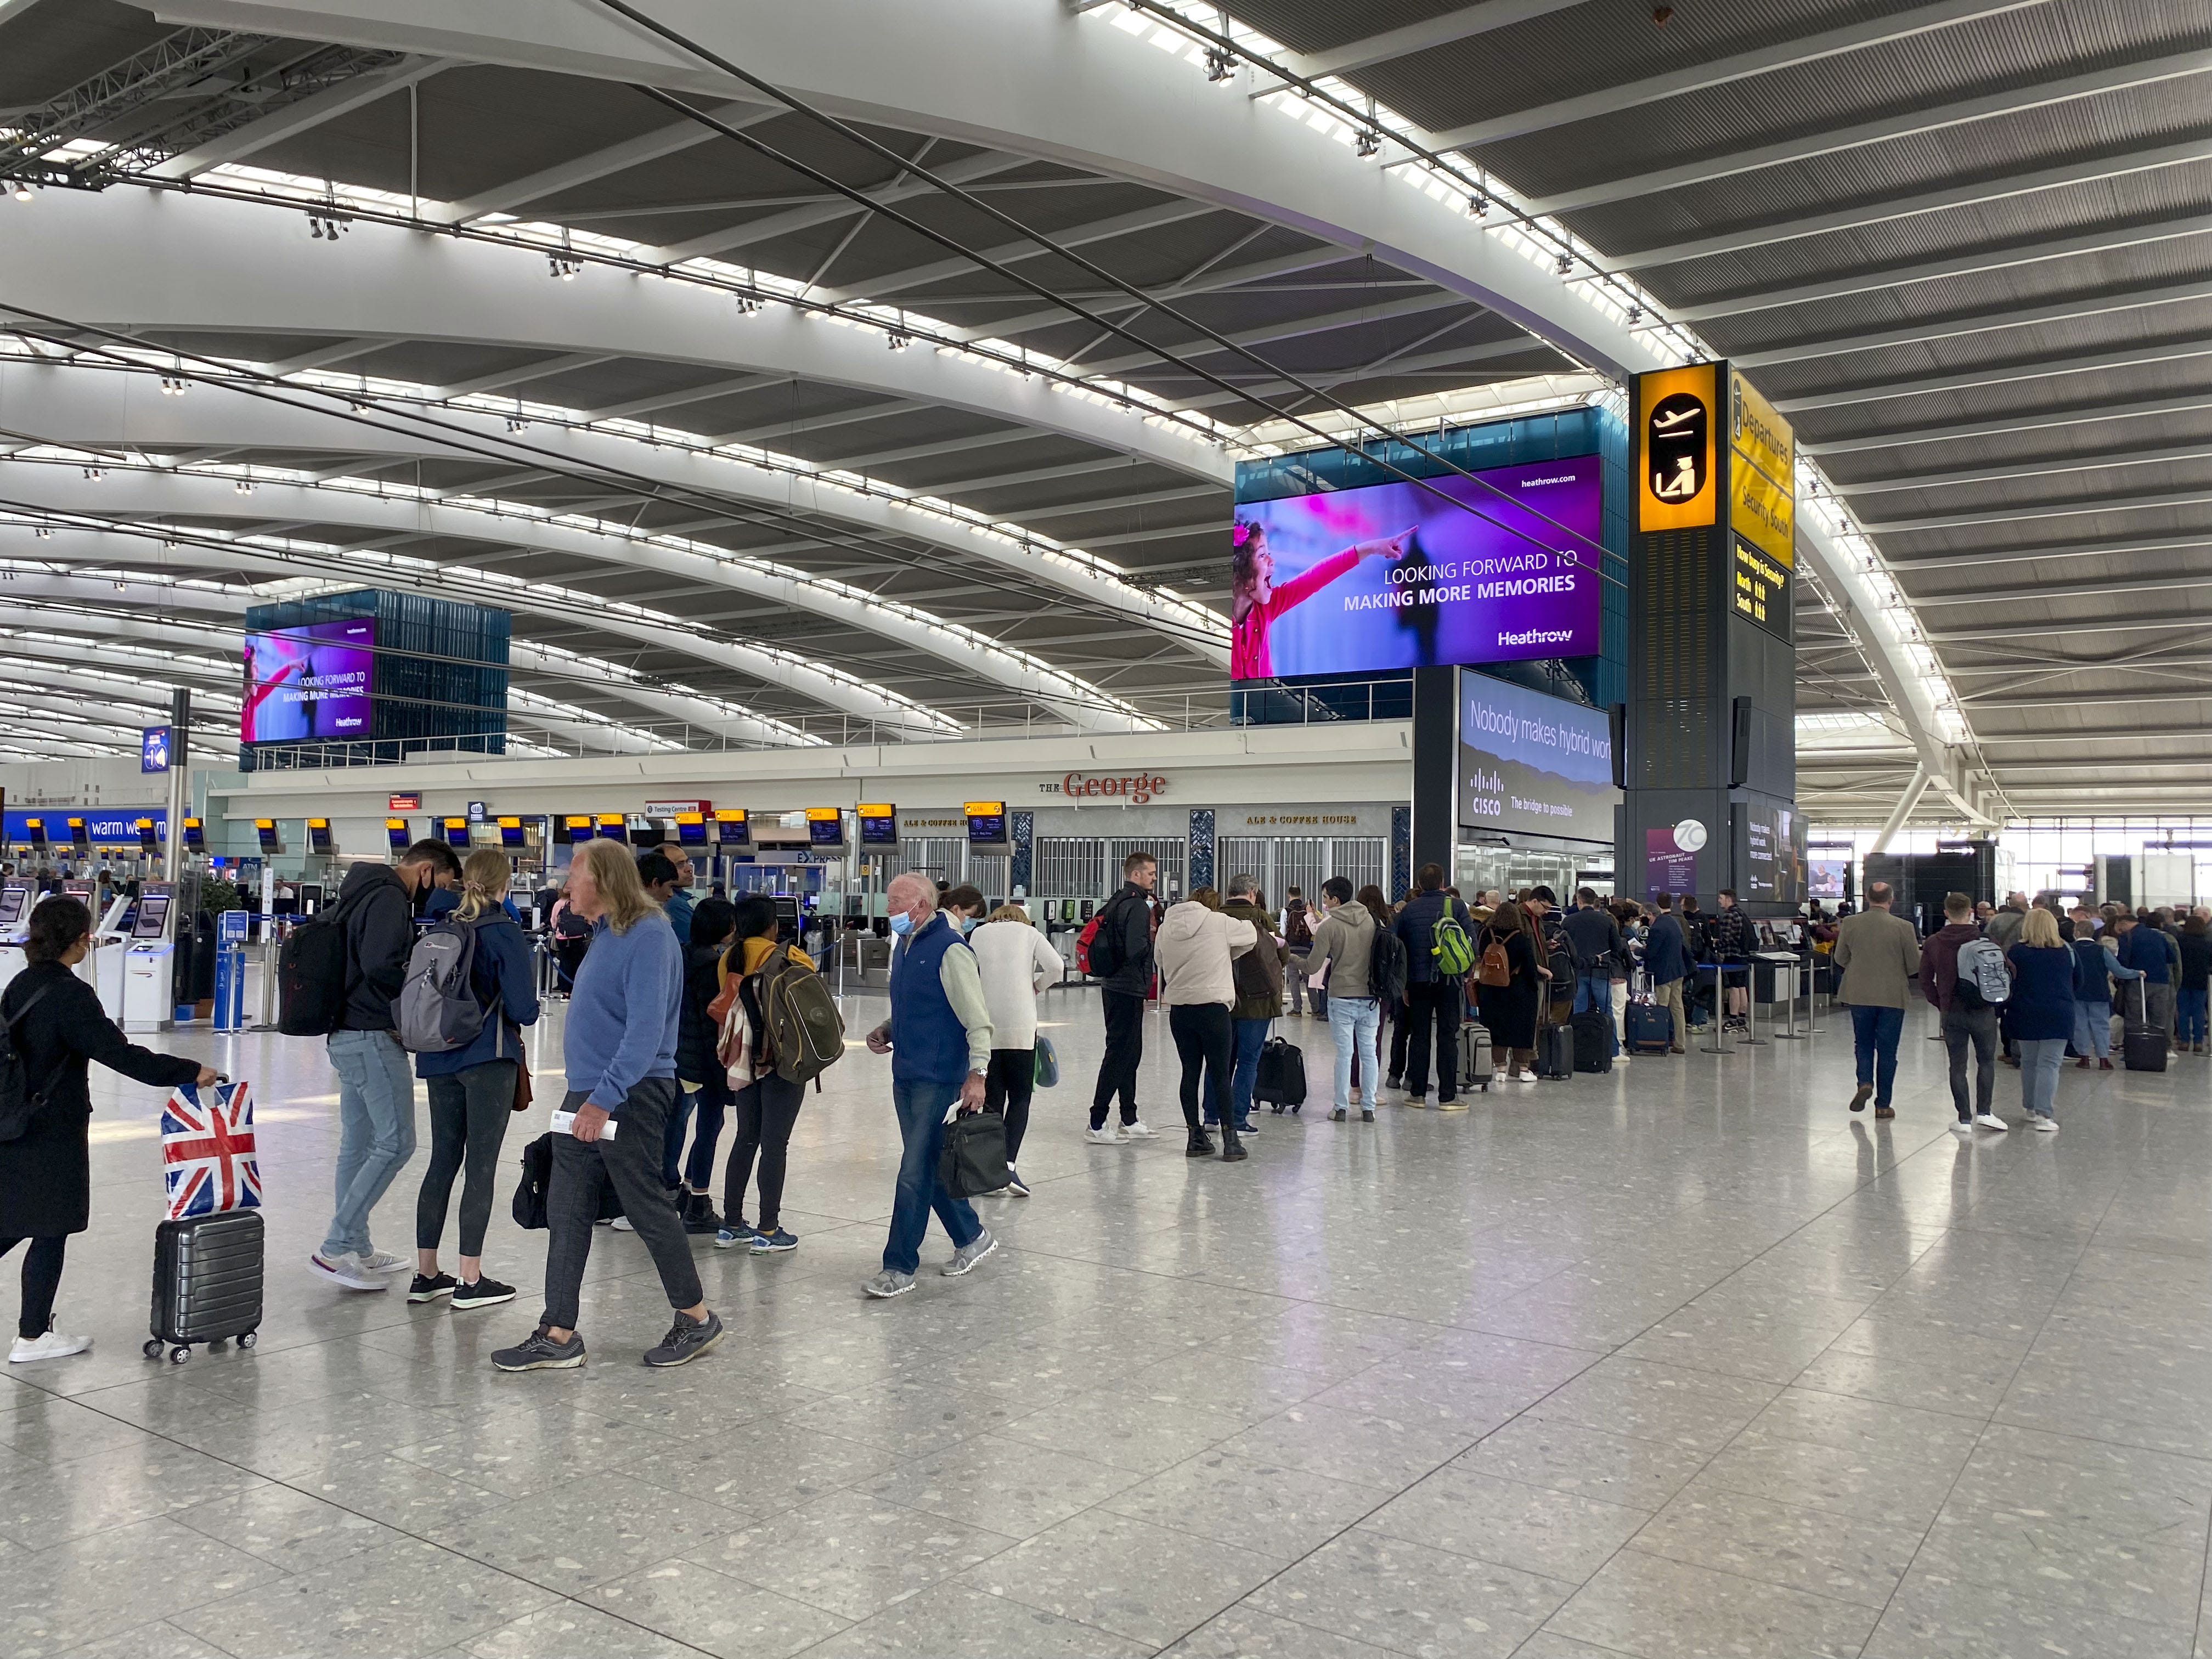 Passagiere stehen im Abflugterminal 5 des Flughafens Heathrow Schlange, um die Sicherheitskontrolle zu passieren.